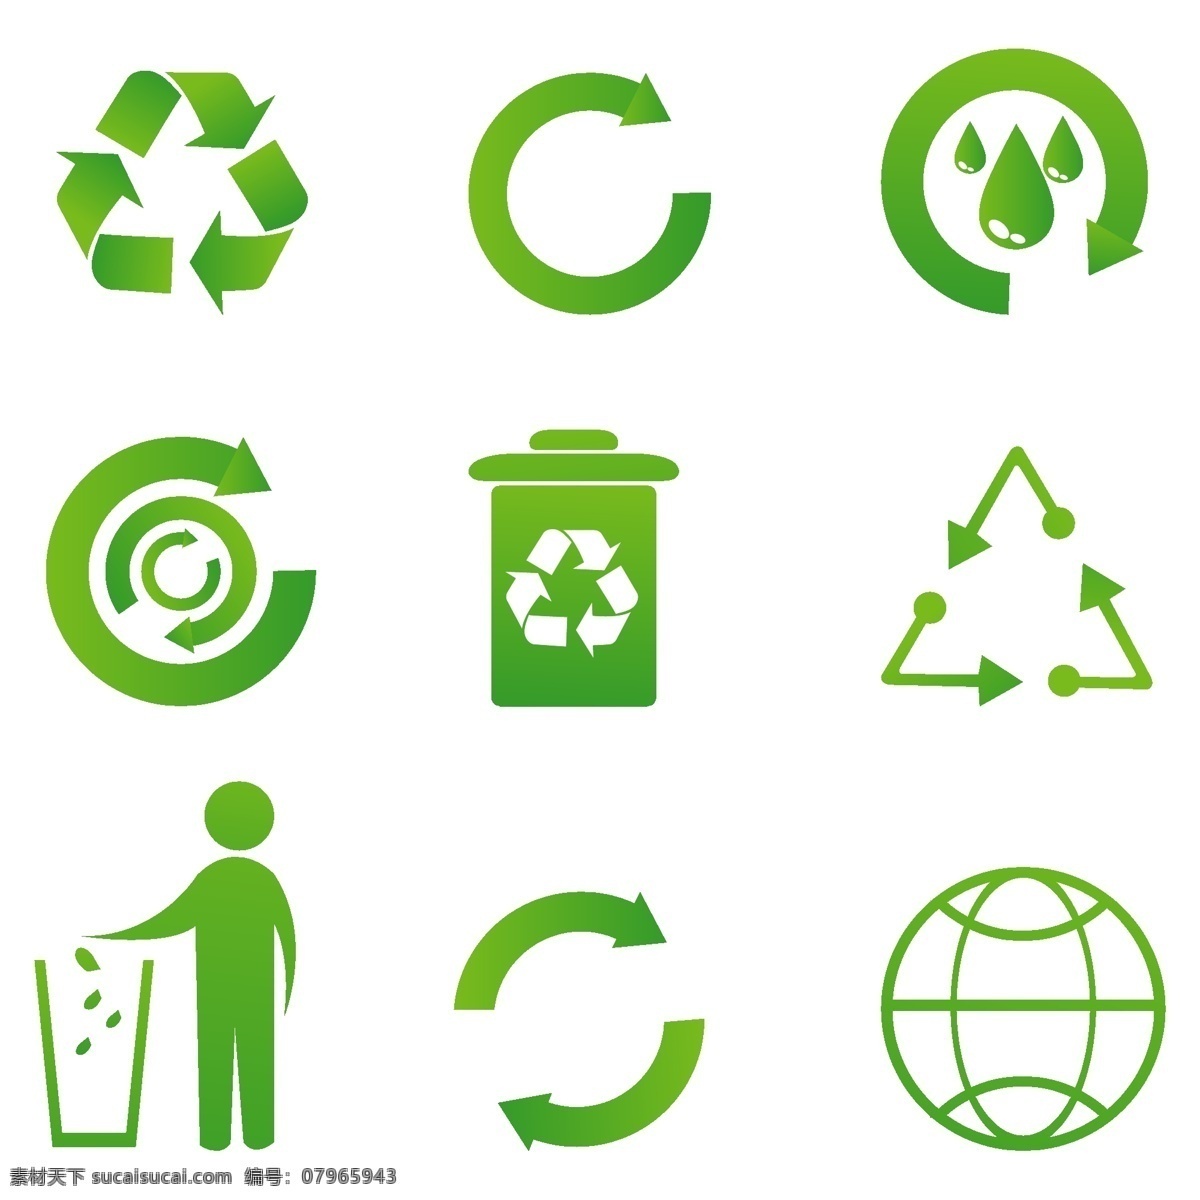 绿色 箭头 循环箭头 地球 可持续发展 人 垃圾桶